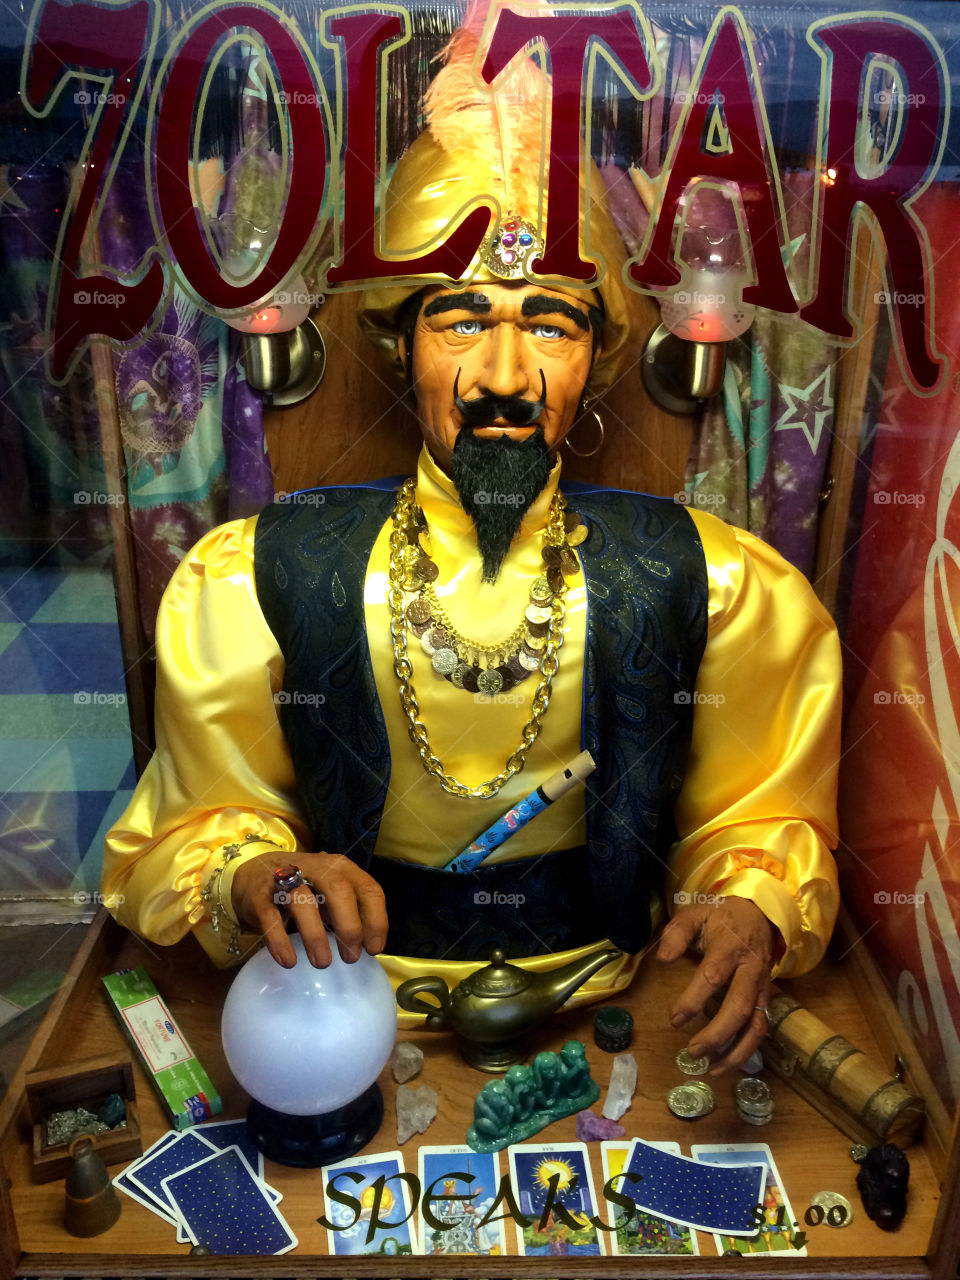 Zoltar the fortune teller. Zoltar the fortune teller